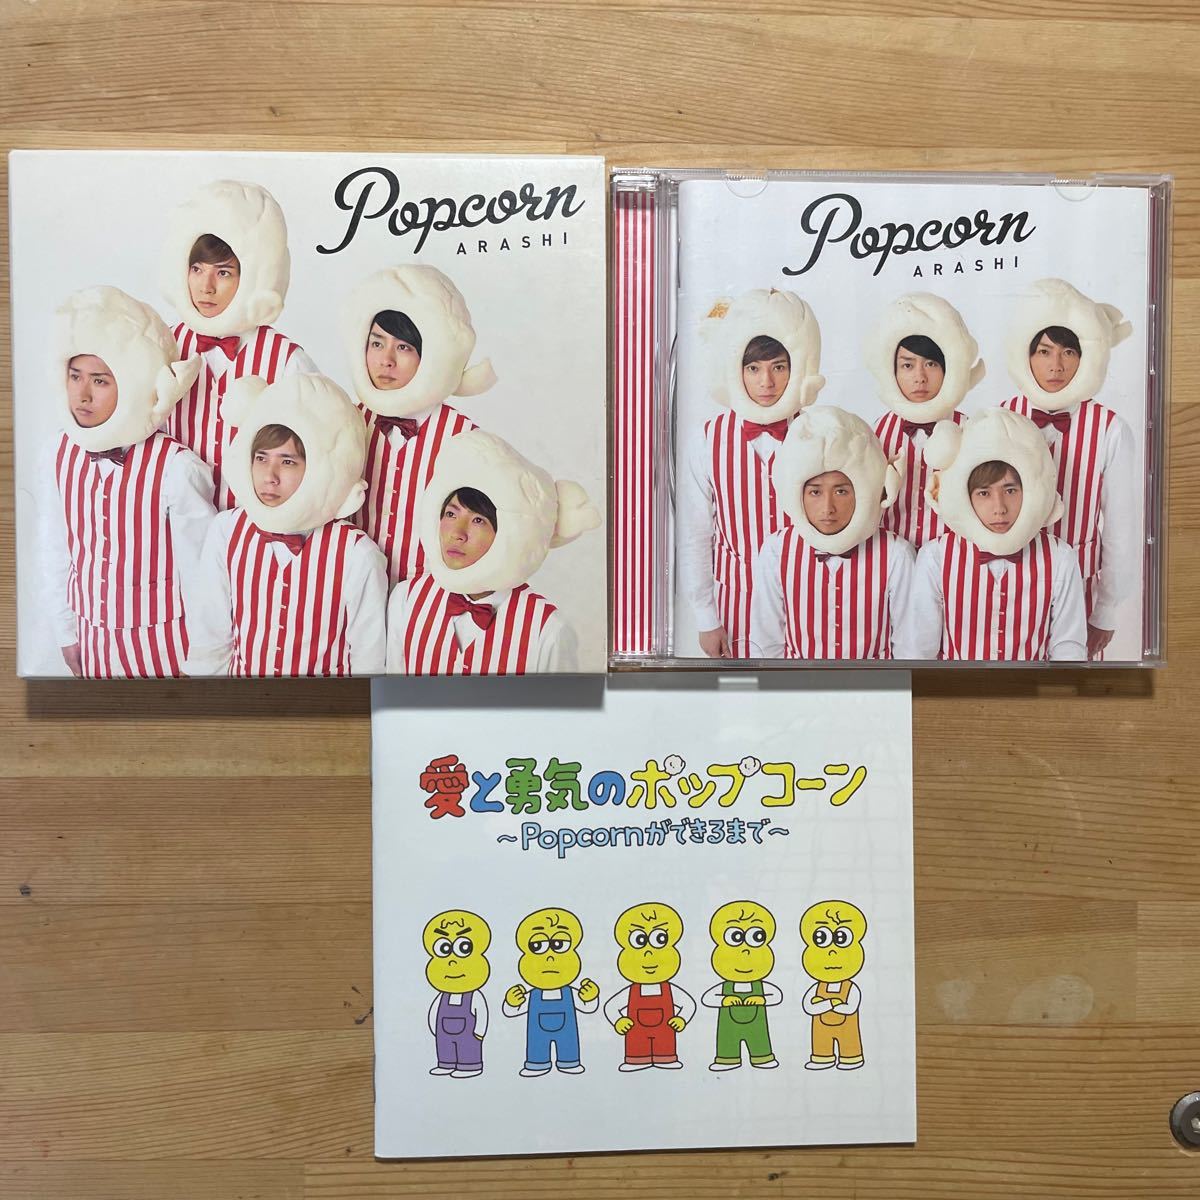 嵐 ARASHI【Popcorn】CDアルバム